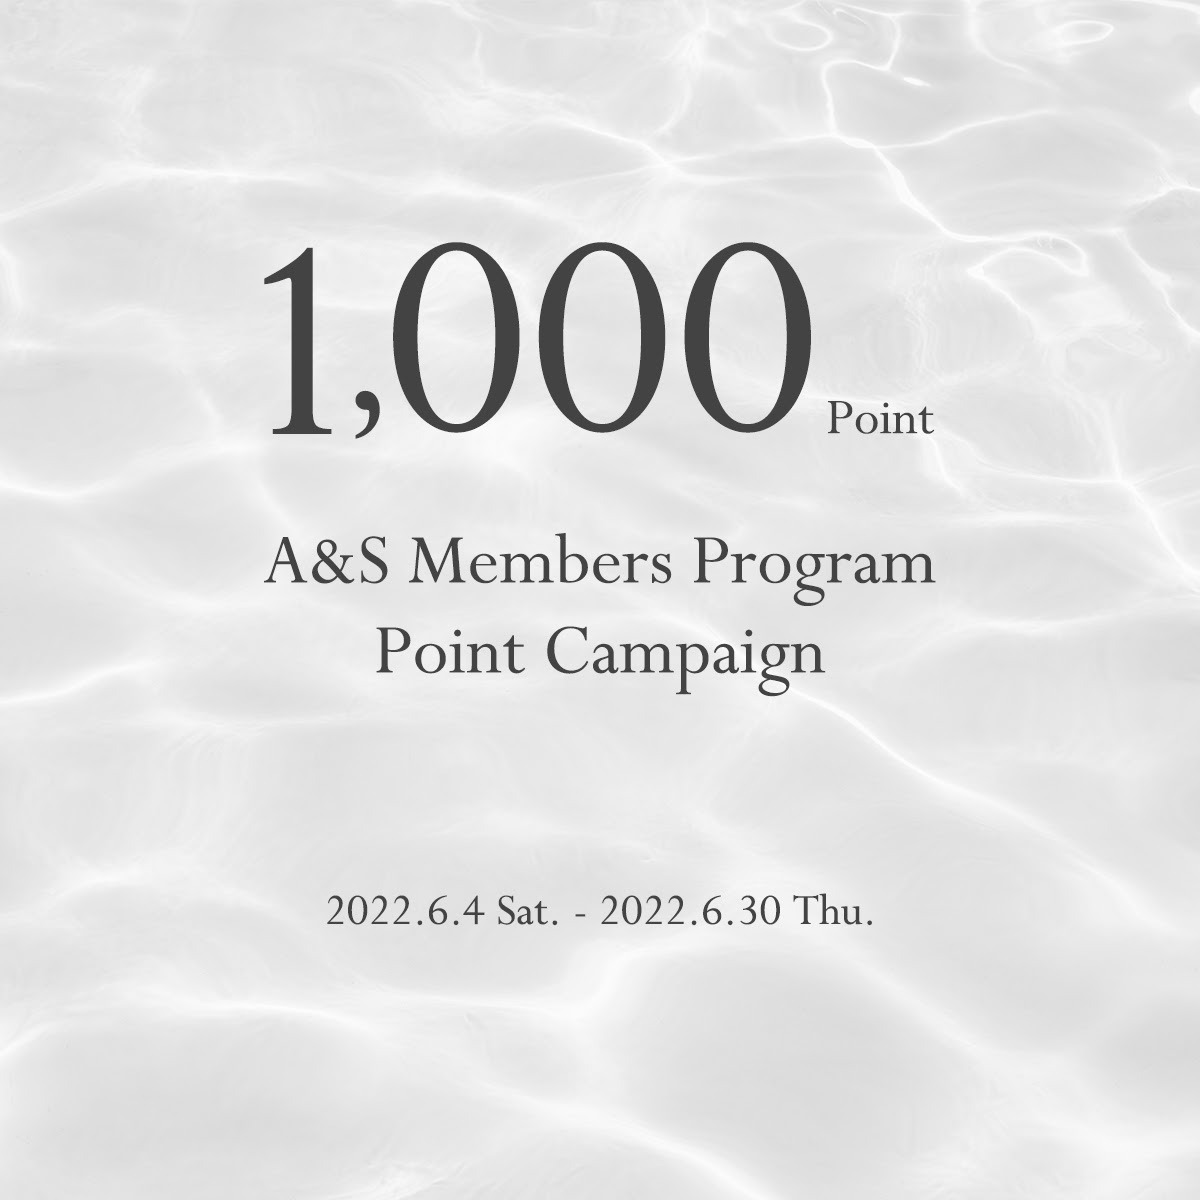 A&Sメンバーズプログラム 1,000ポイントプレゼントキャンペーン